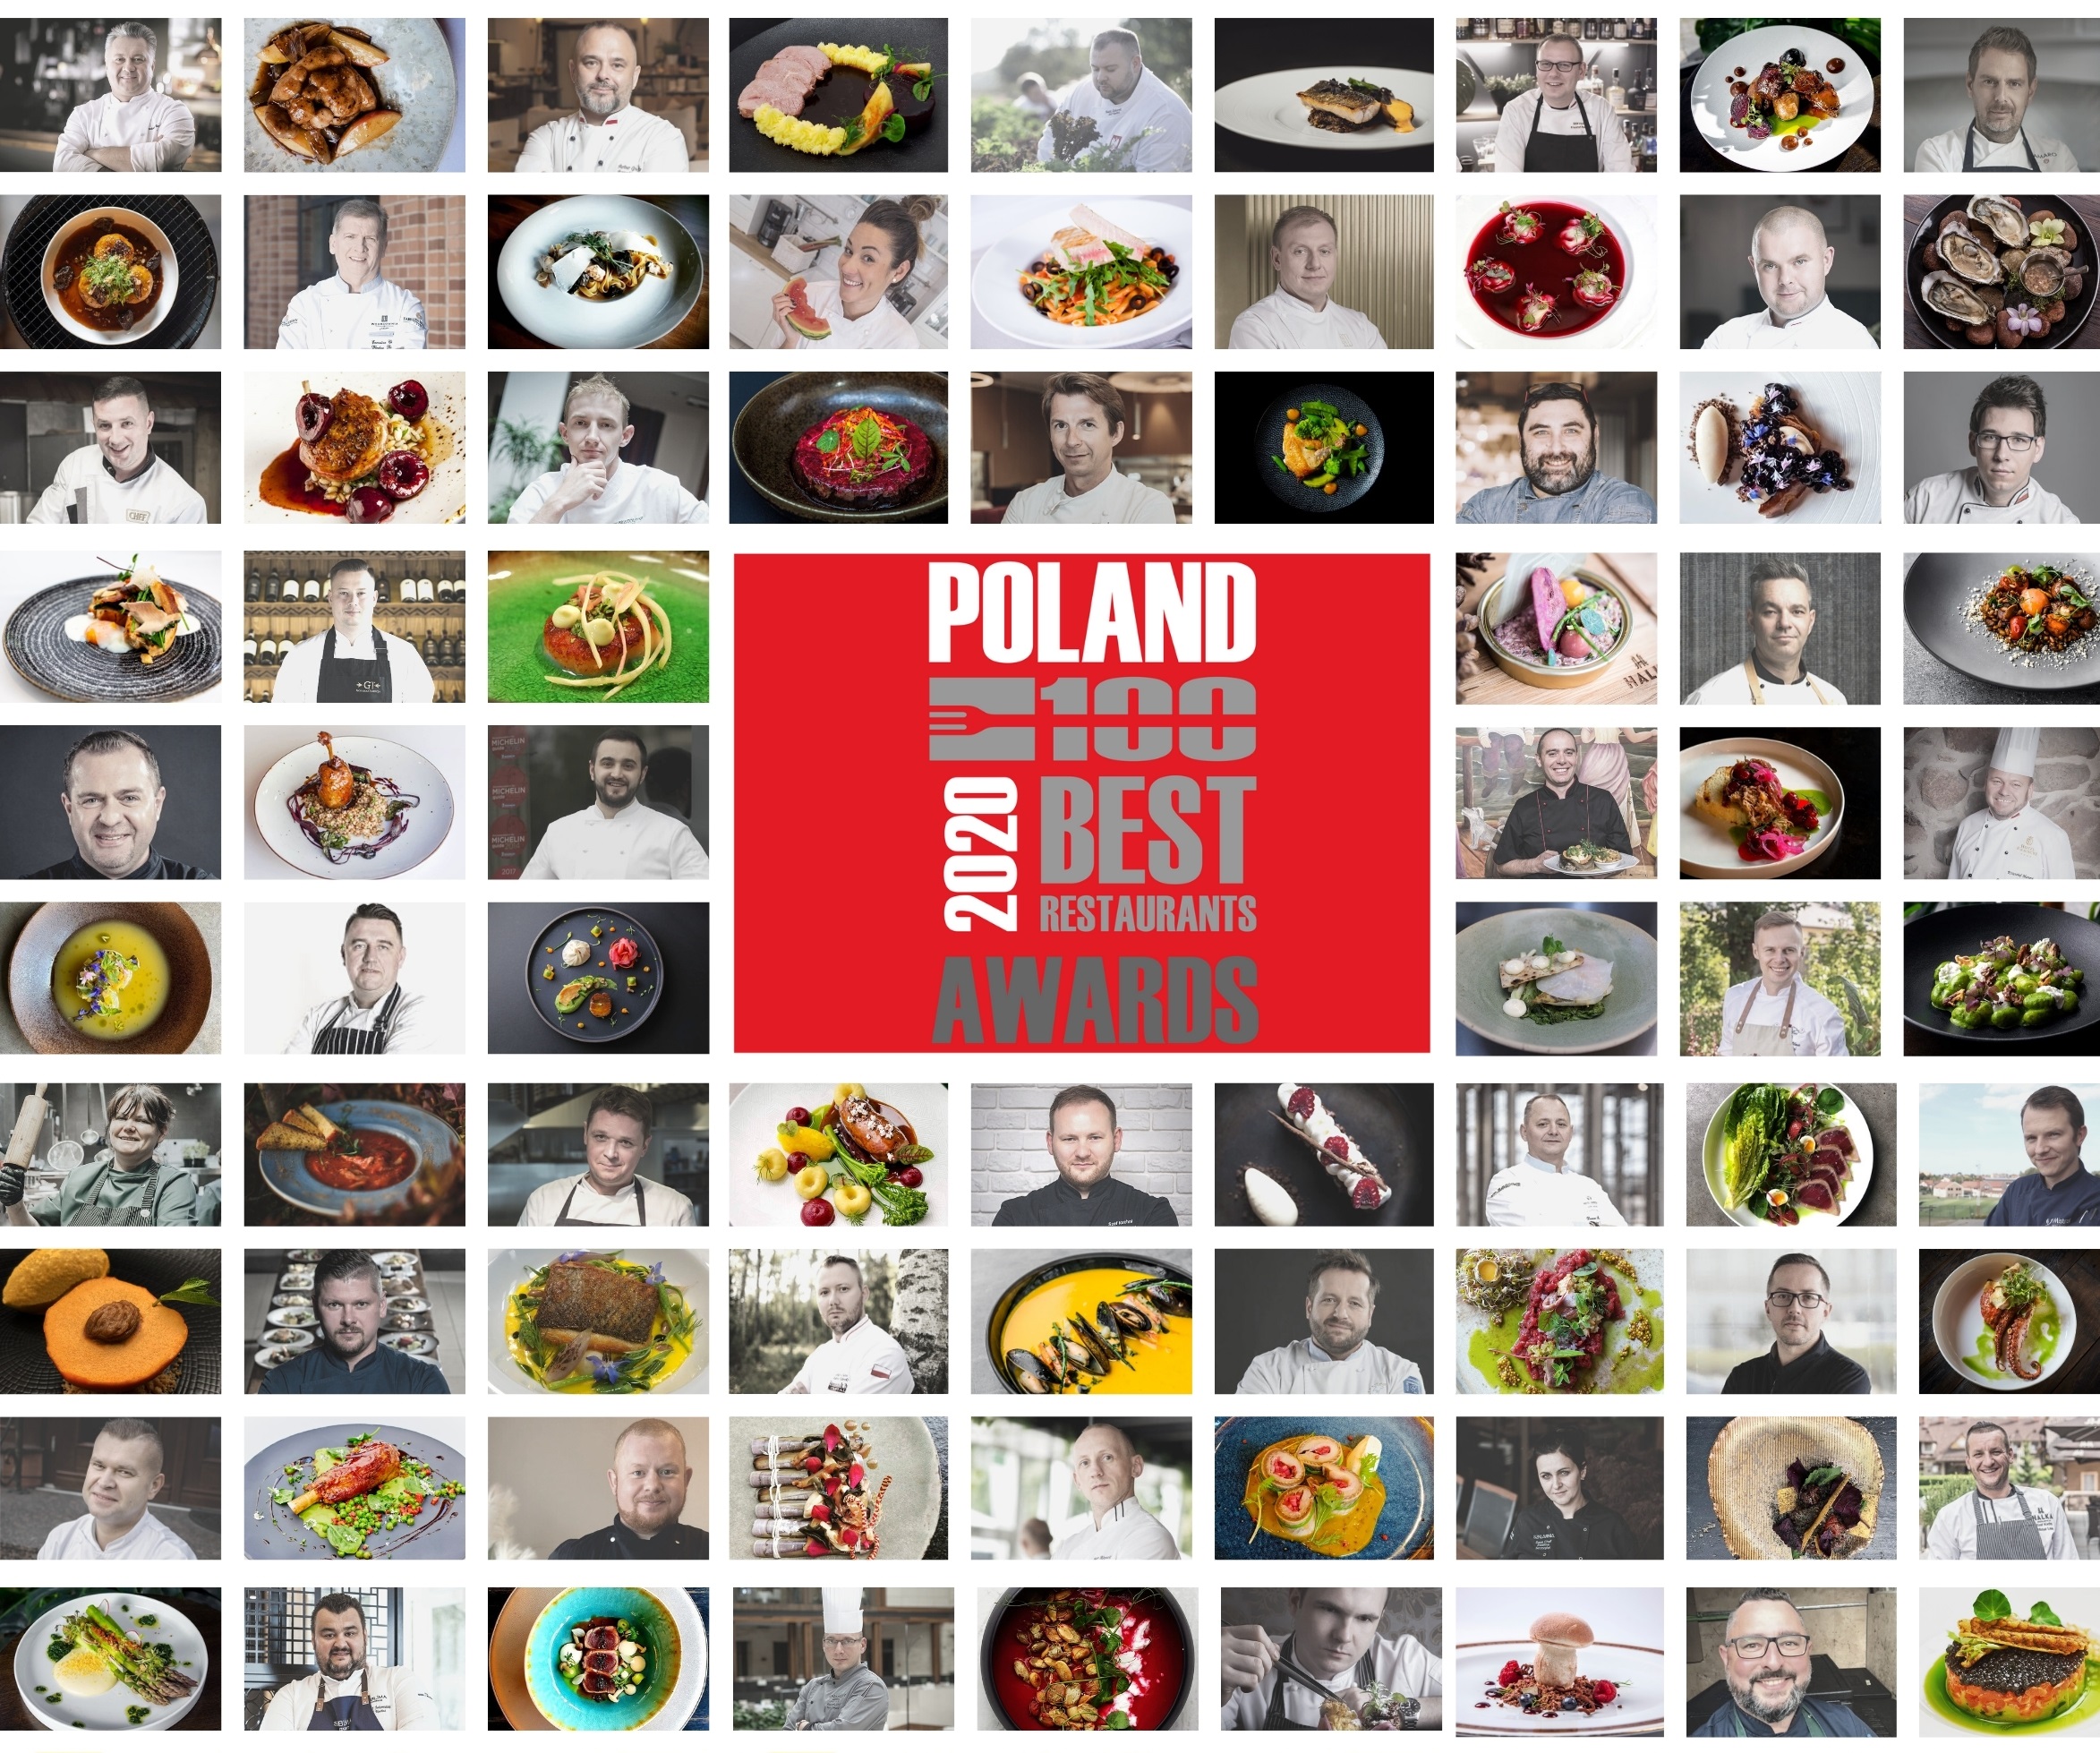 Poland 100 Best Restaurants Awards 2020 – online